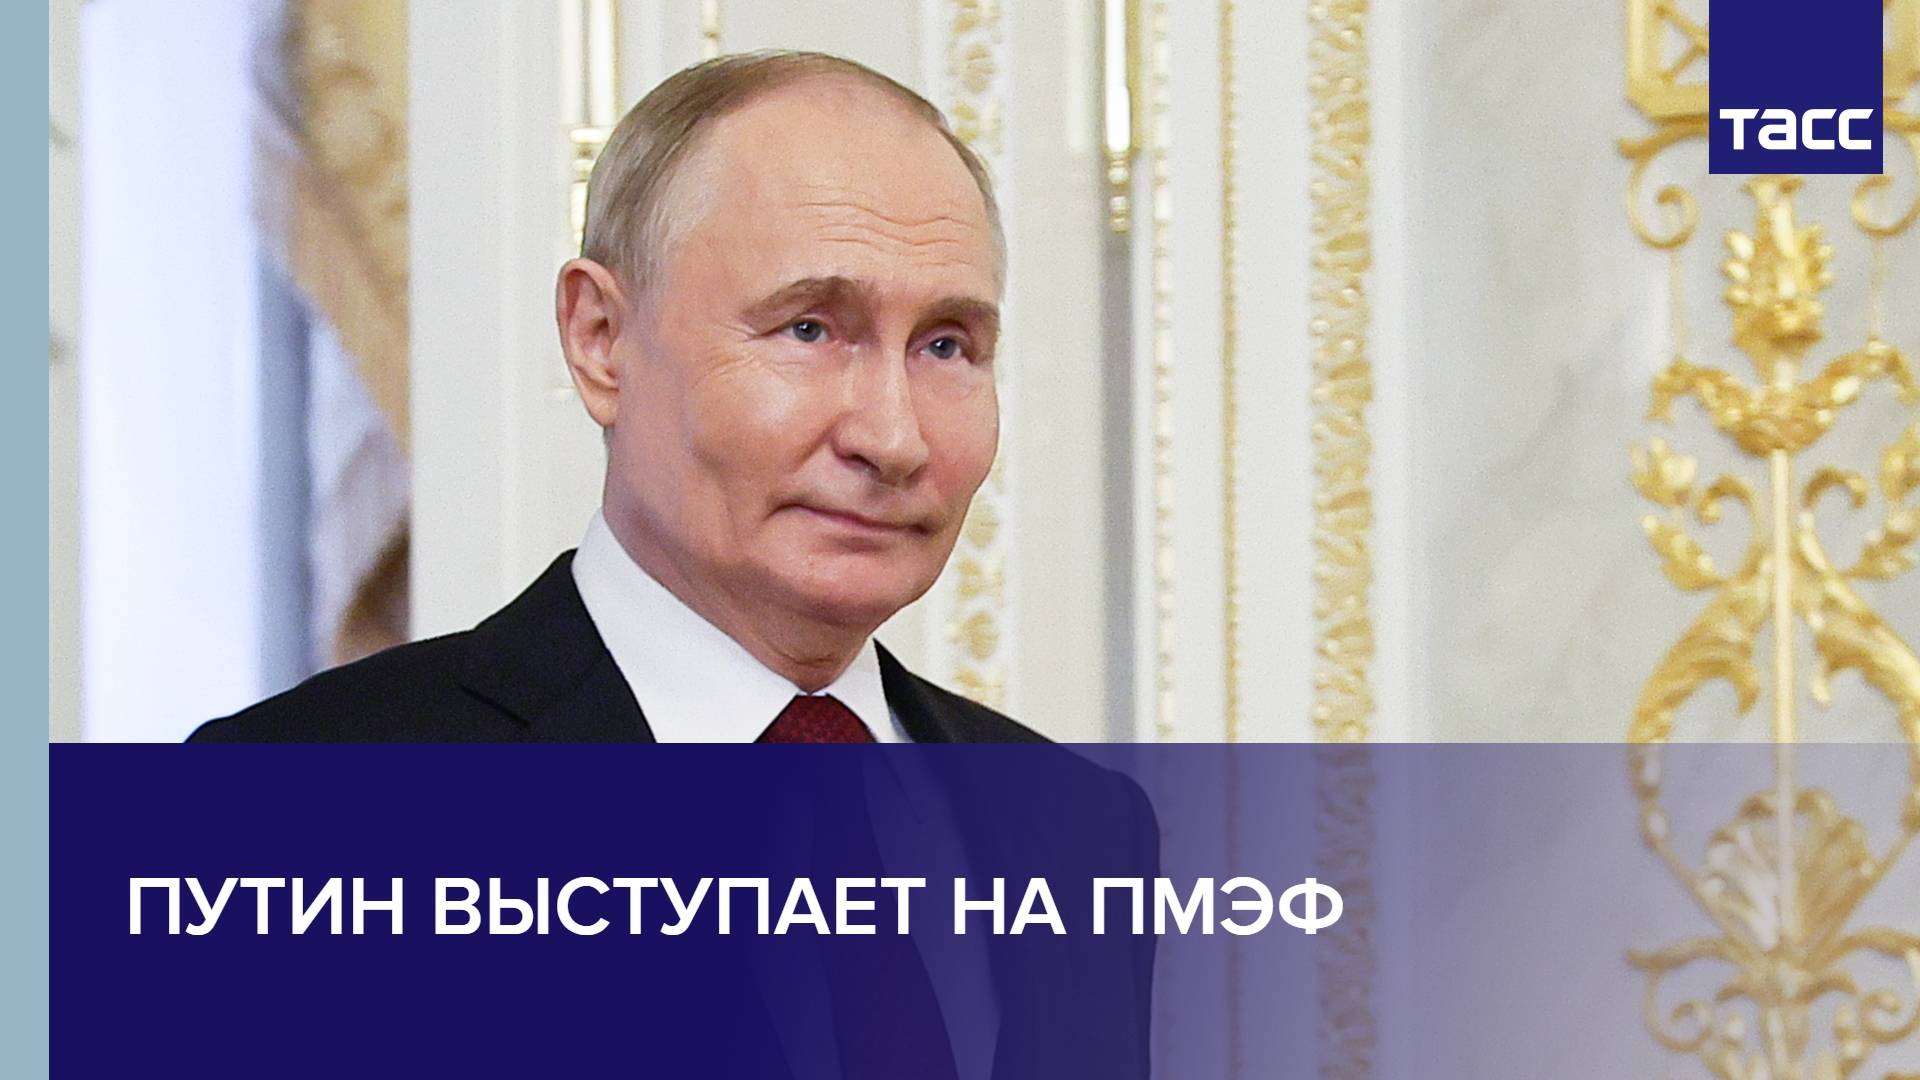 Путин выступает на ПМЭФ